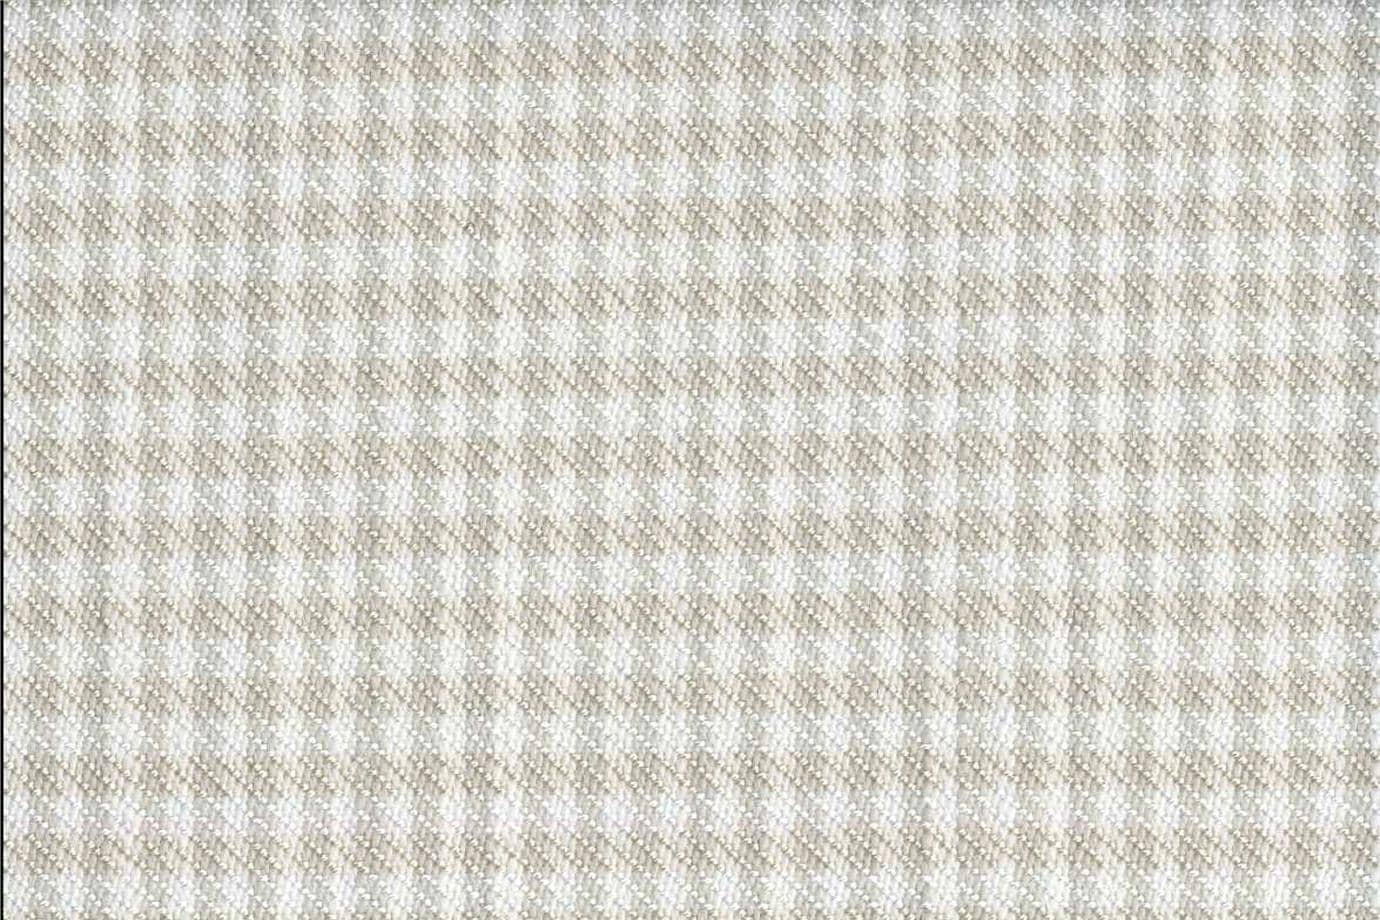 J2838 PIED DE POULE 001 Bianco avorio home decoration fabric